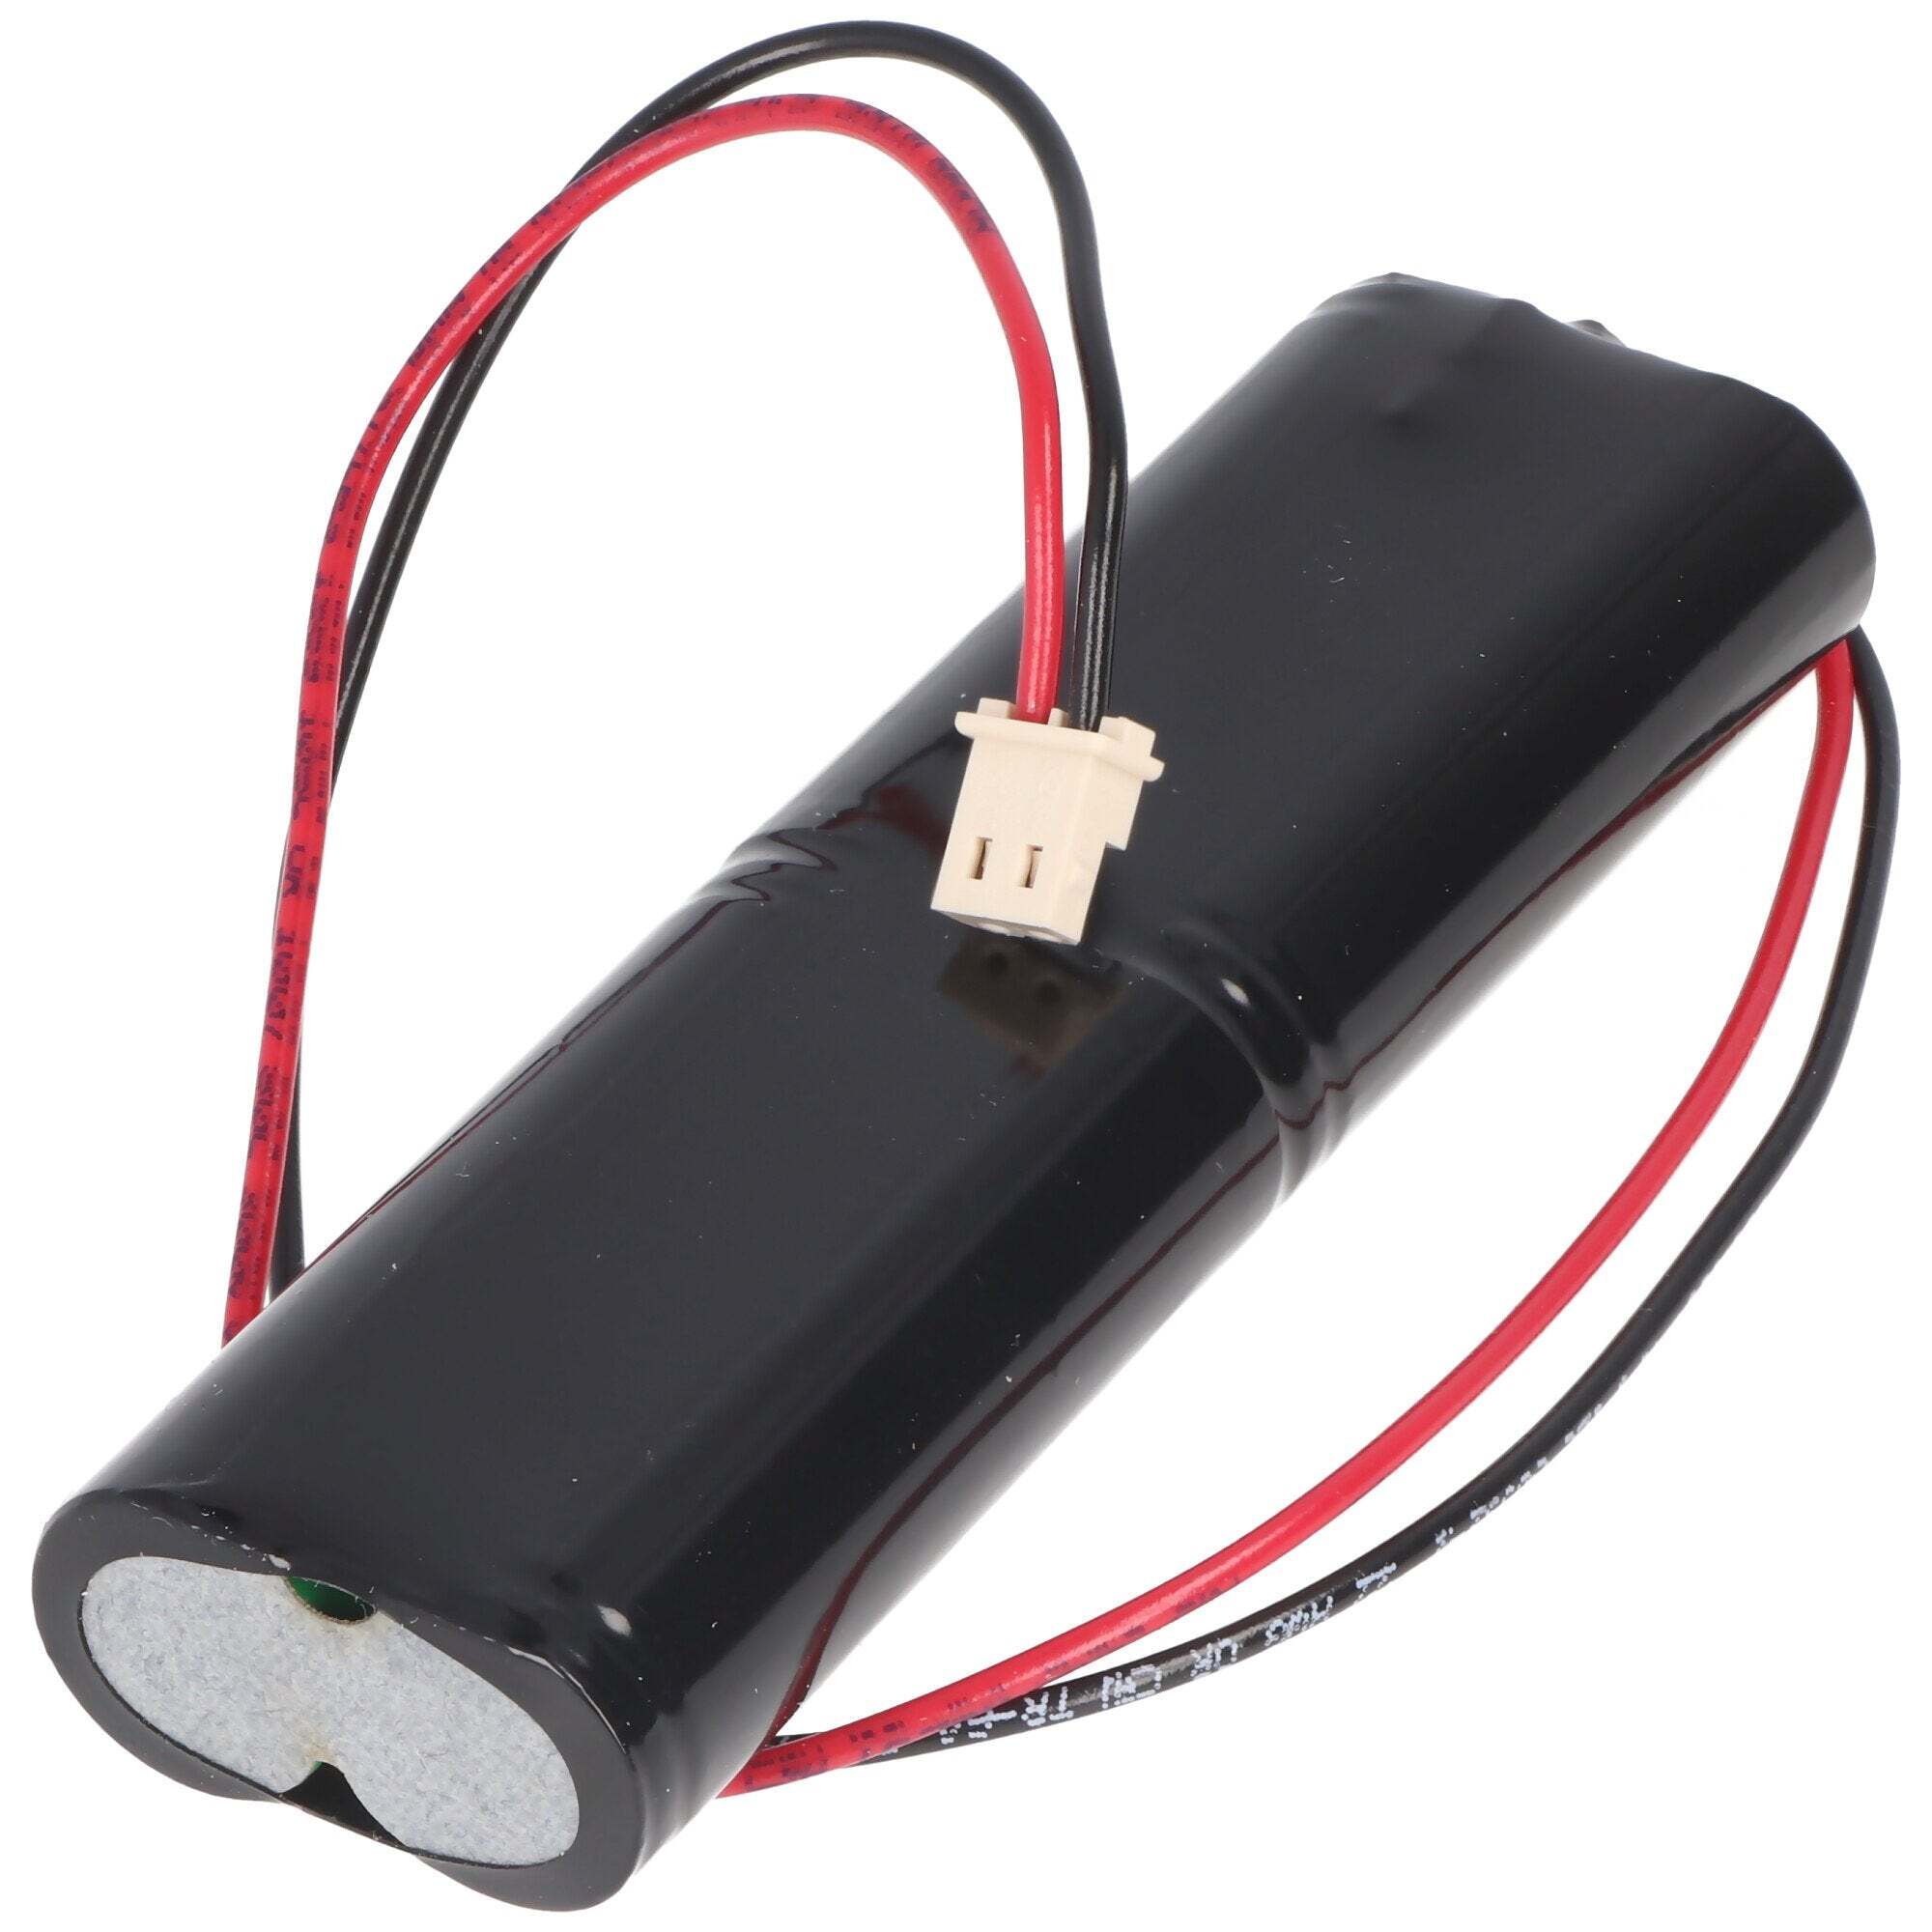 ACCUCELL NiMH-batterijpakket geschikt voor nood- en veiligheidsverlichting met 4,8 volt spanning en 1600 mAh